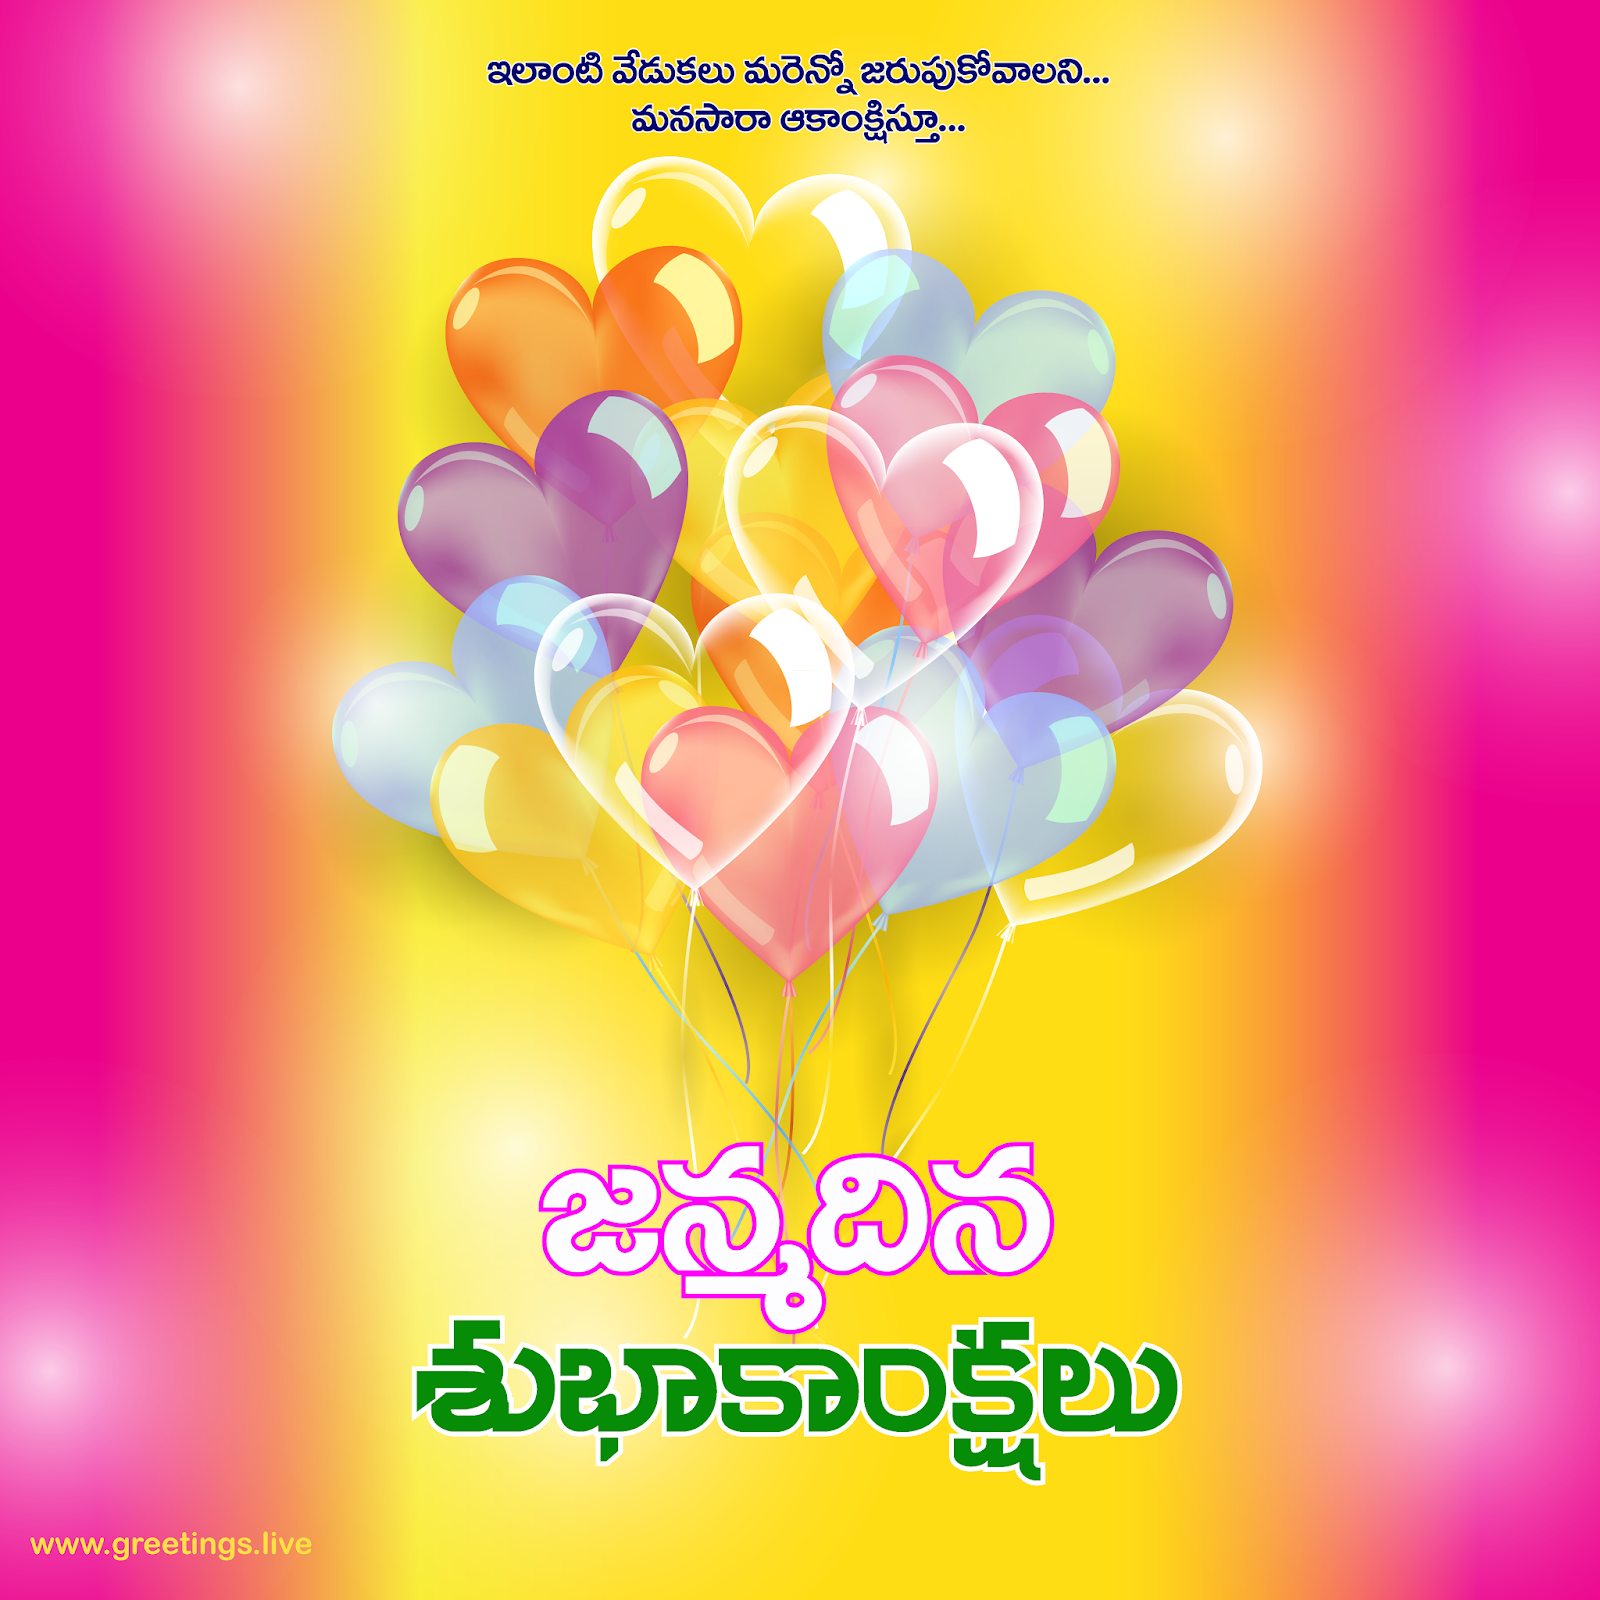 free greetings in telugu birthday